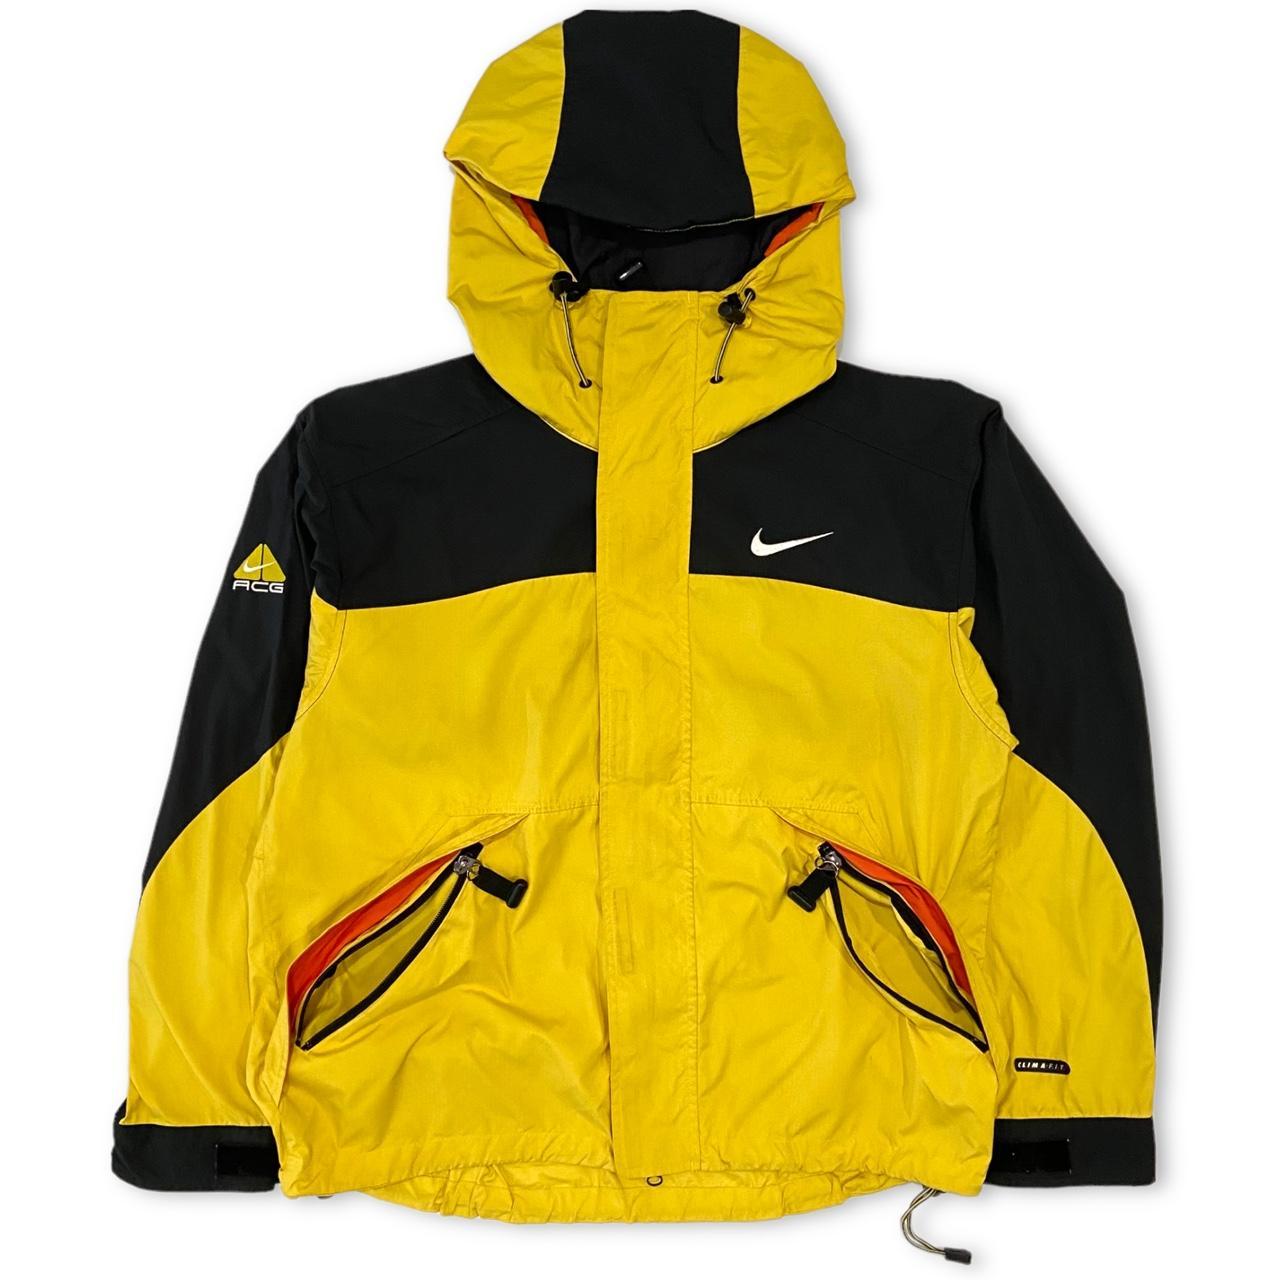 Vintage Nike ACG Jacket in yellow and black... - Depop